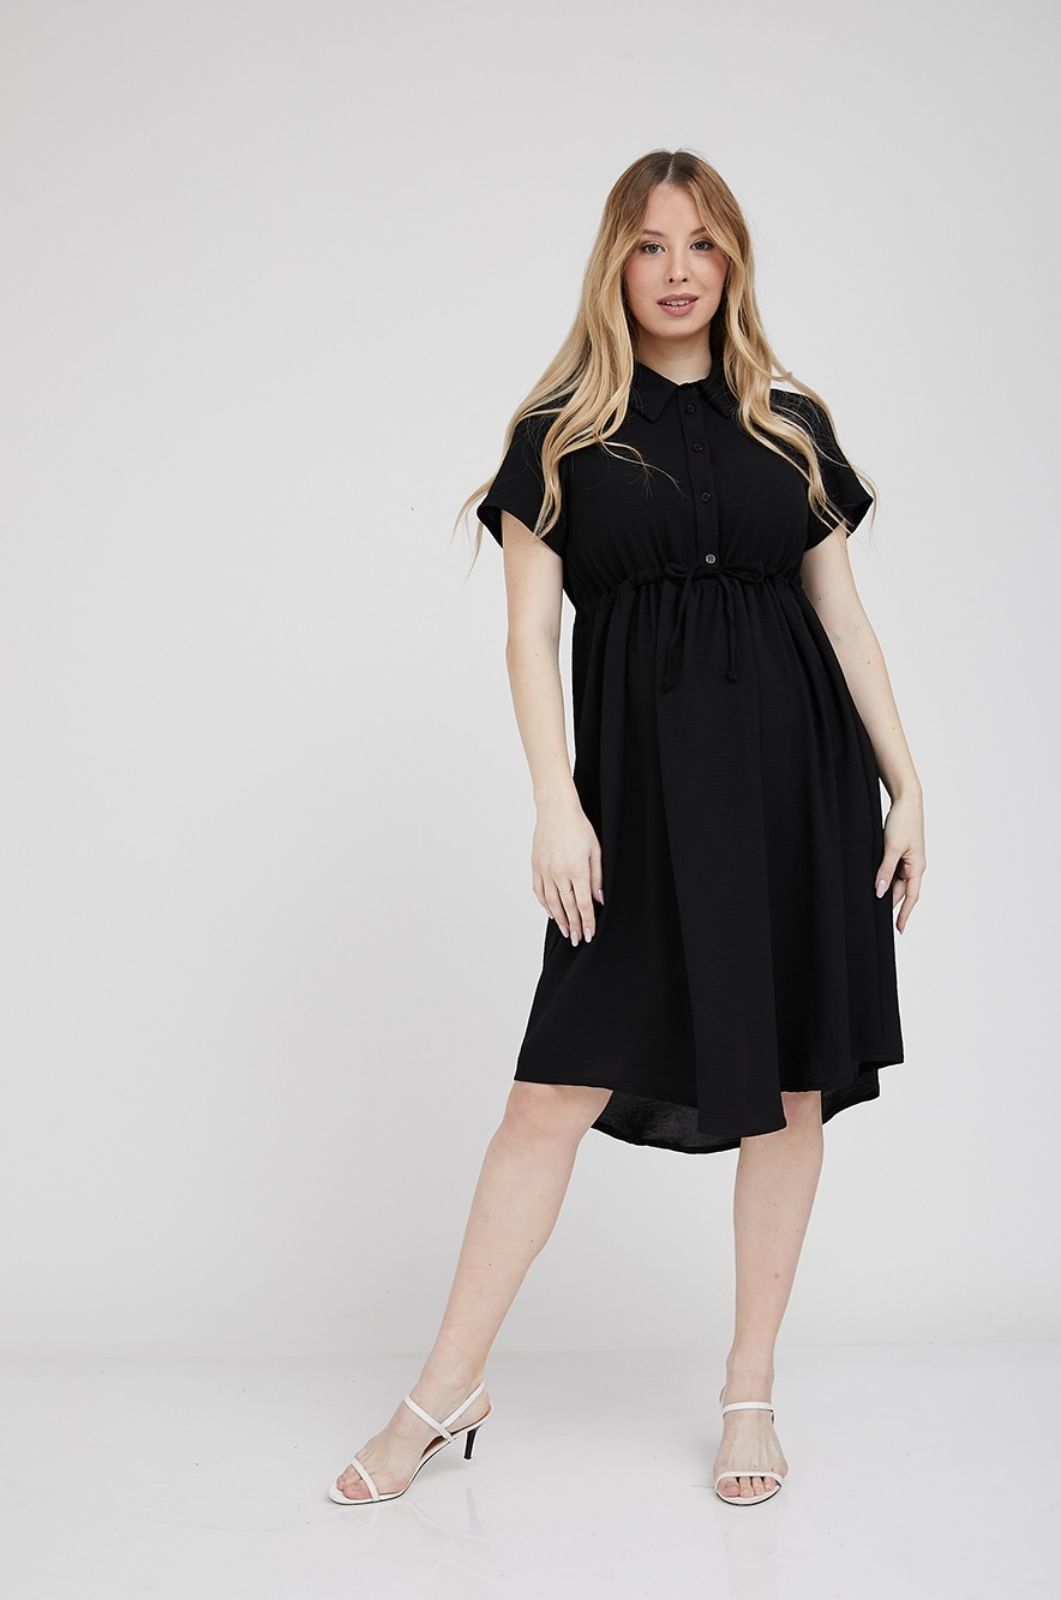 תמונה של שמלת הריון עם שרוך טריני שחורה